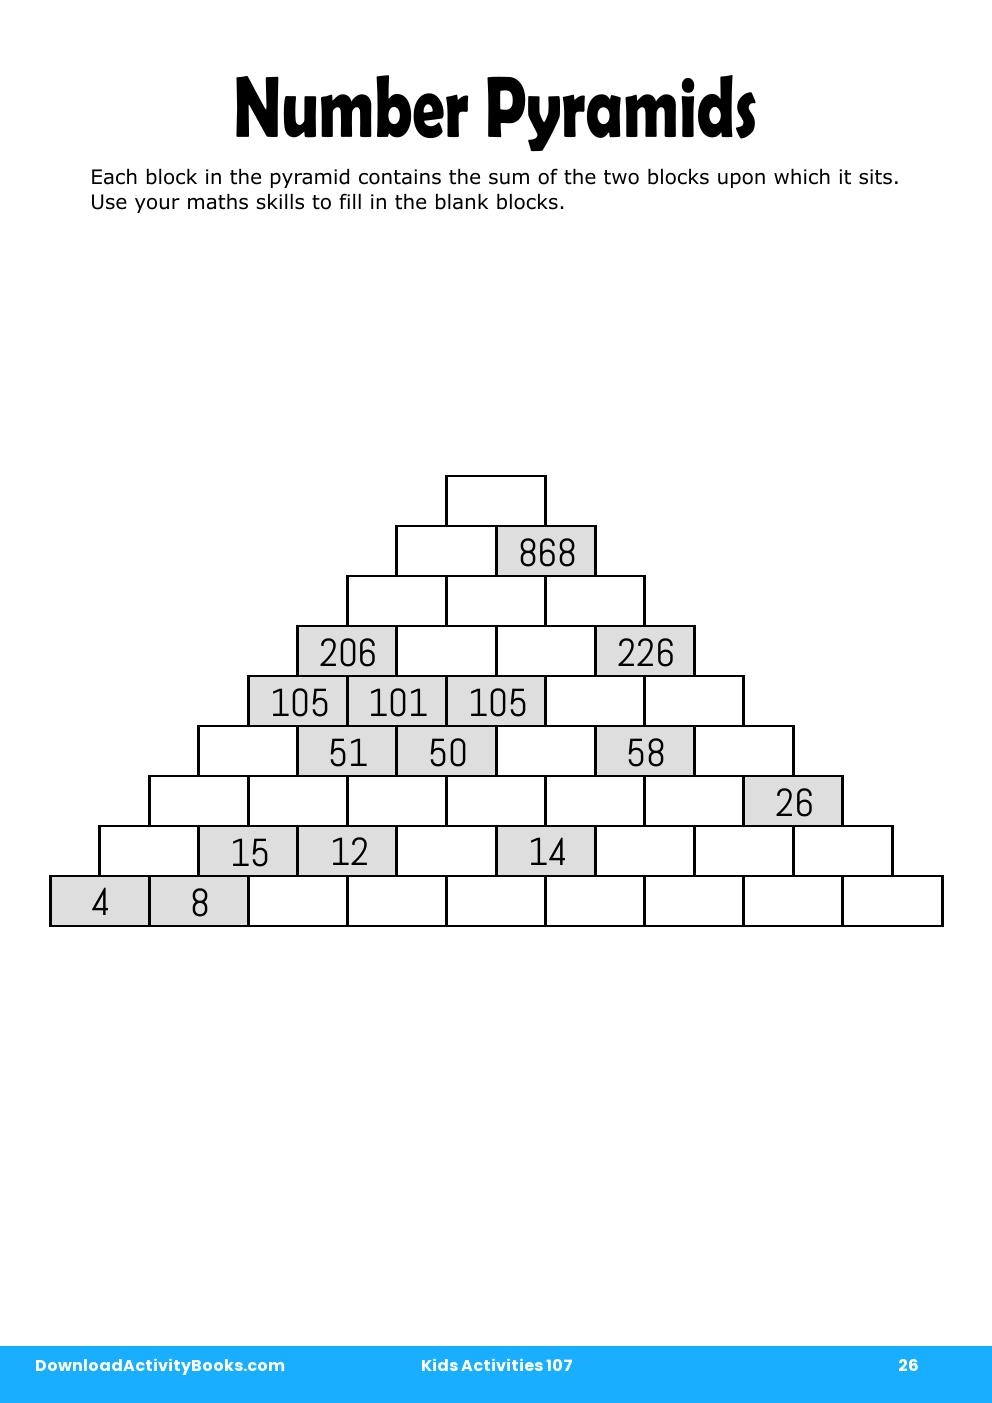 Number Pyramids in Kids Activities 107